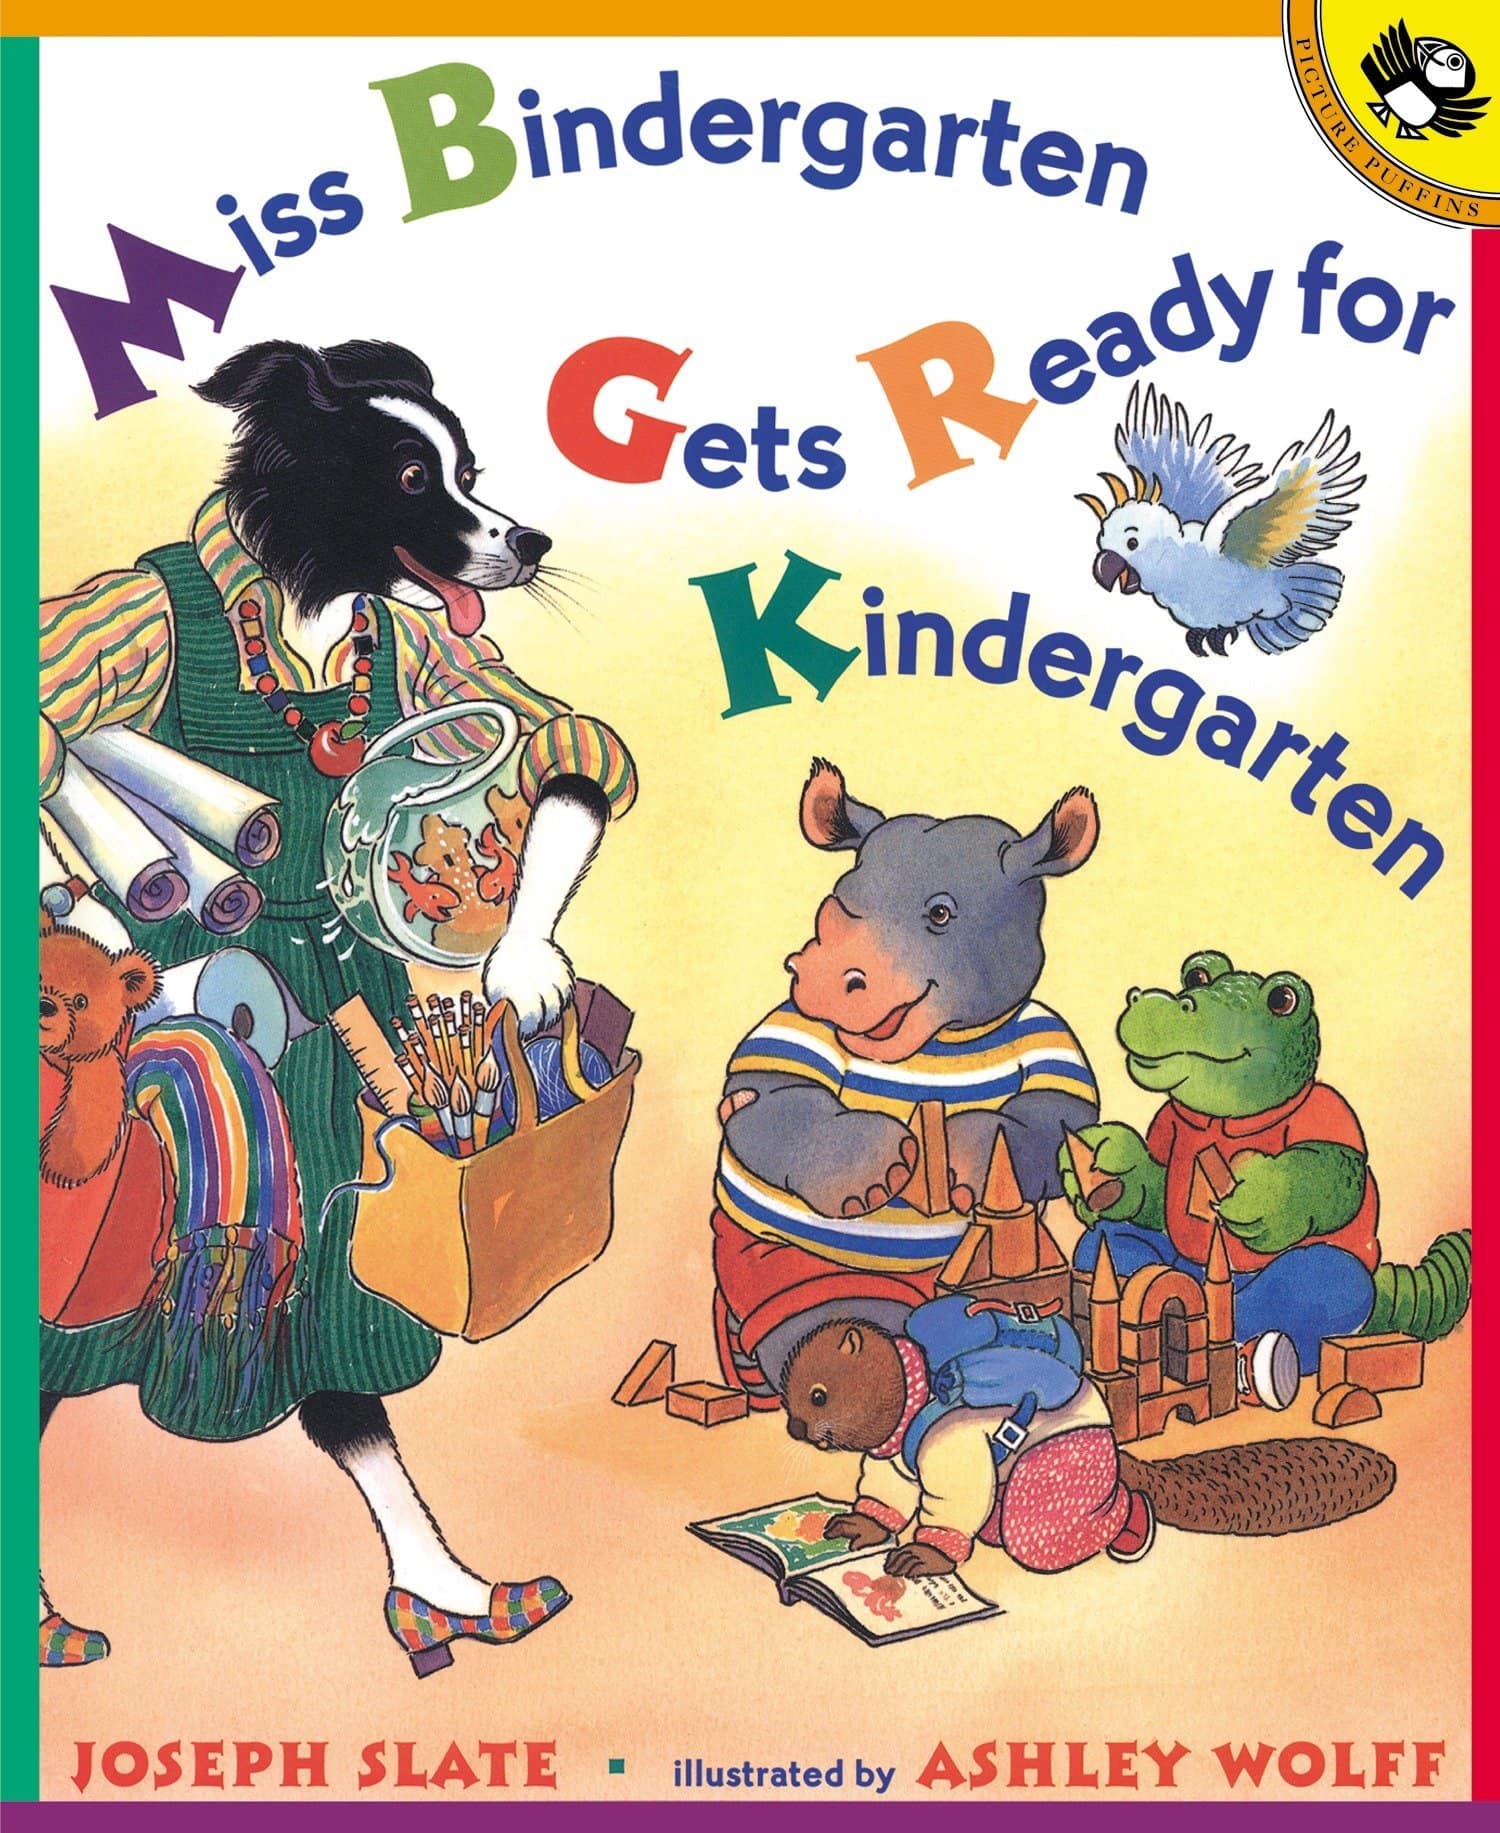 "Miss Bindergarten Gets Ready for Kindergarten" by Joseph Slate